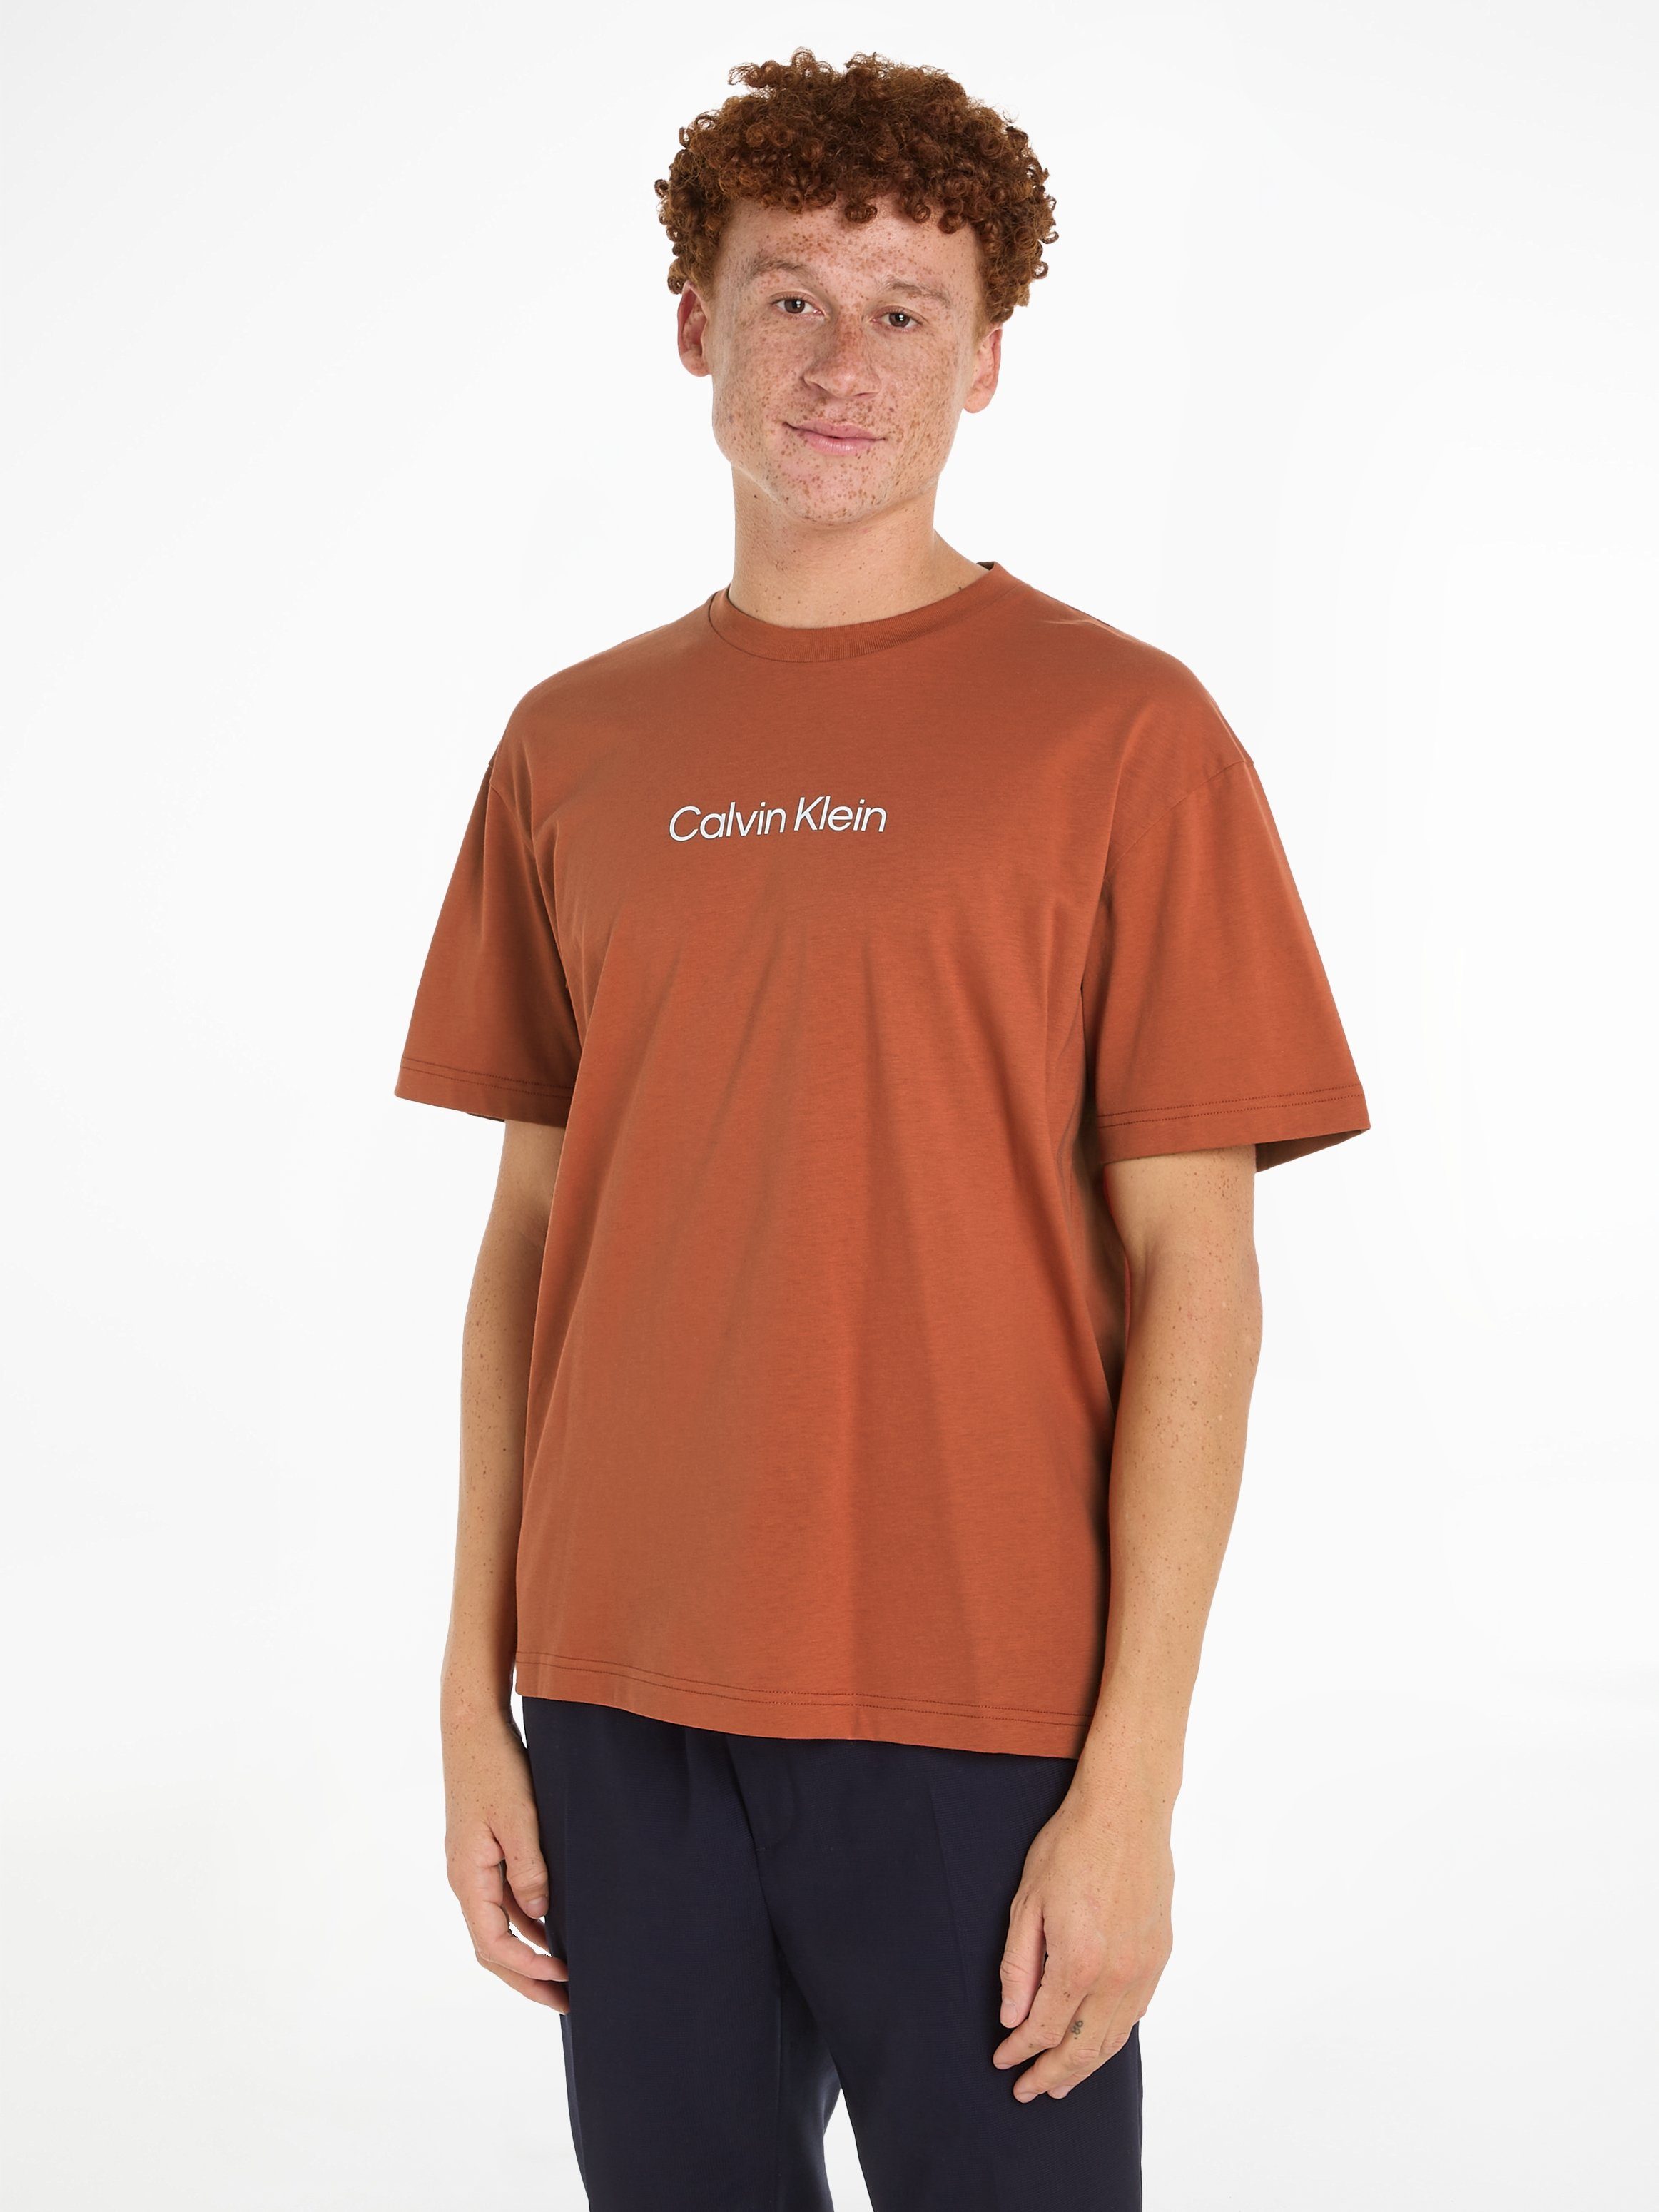 Calvin Klein T-Shirt HERO LOGO Copper COMFORT Markenlabel aufgedrucktem Sun T-SHIRT mit